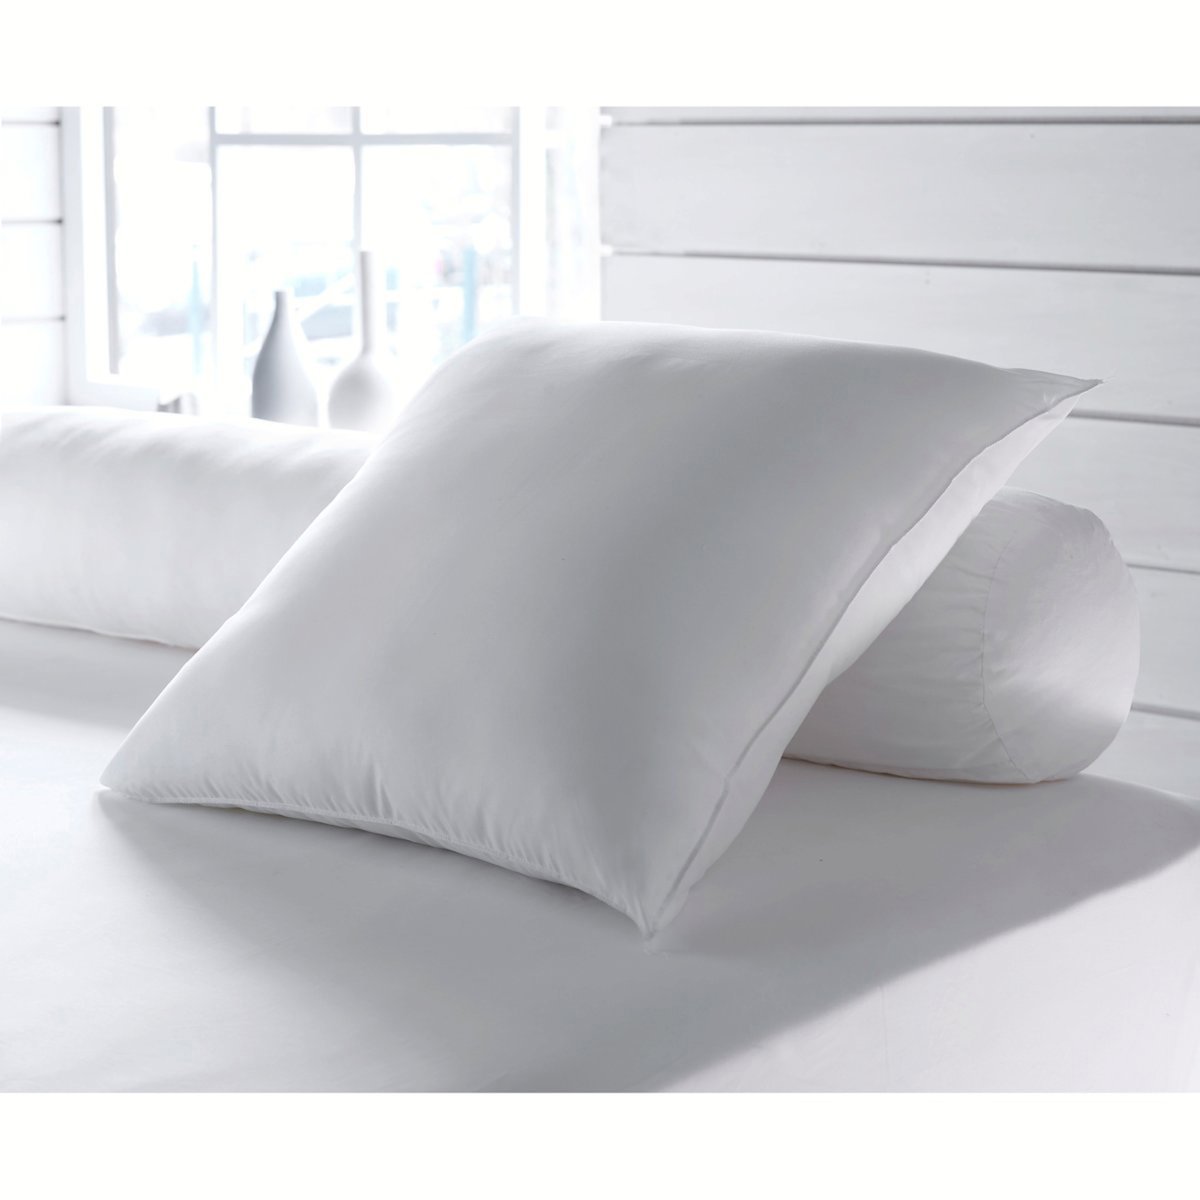 Одеяло La Redoute Экологичное с обработкой против клещей Proneem высокого качества 200 x 200 см белый, размер 200 x 200 см - фото 2